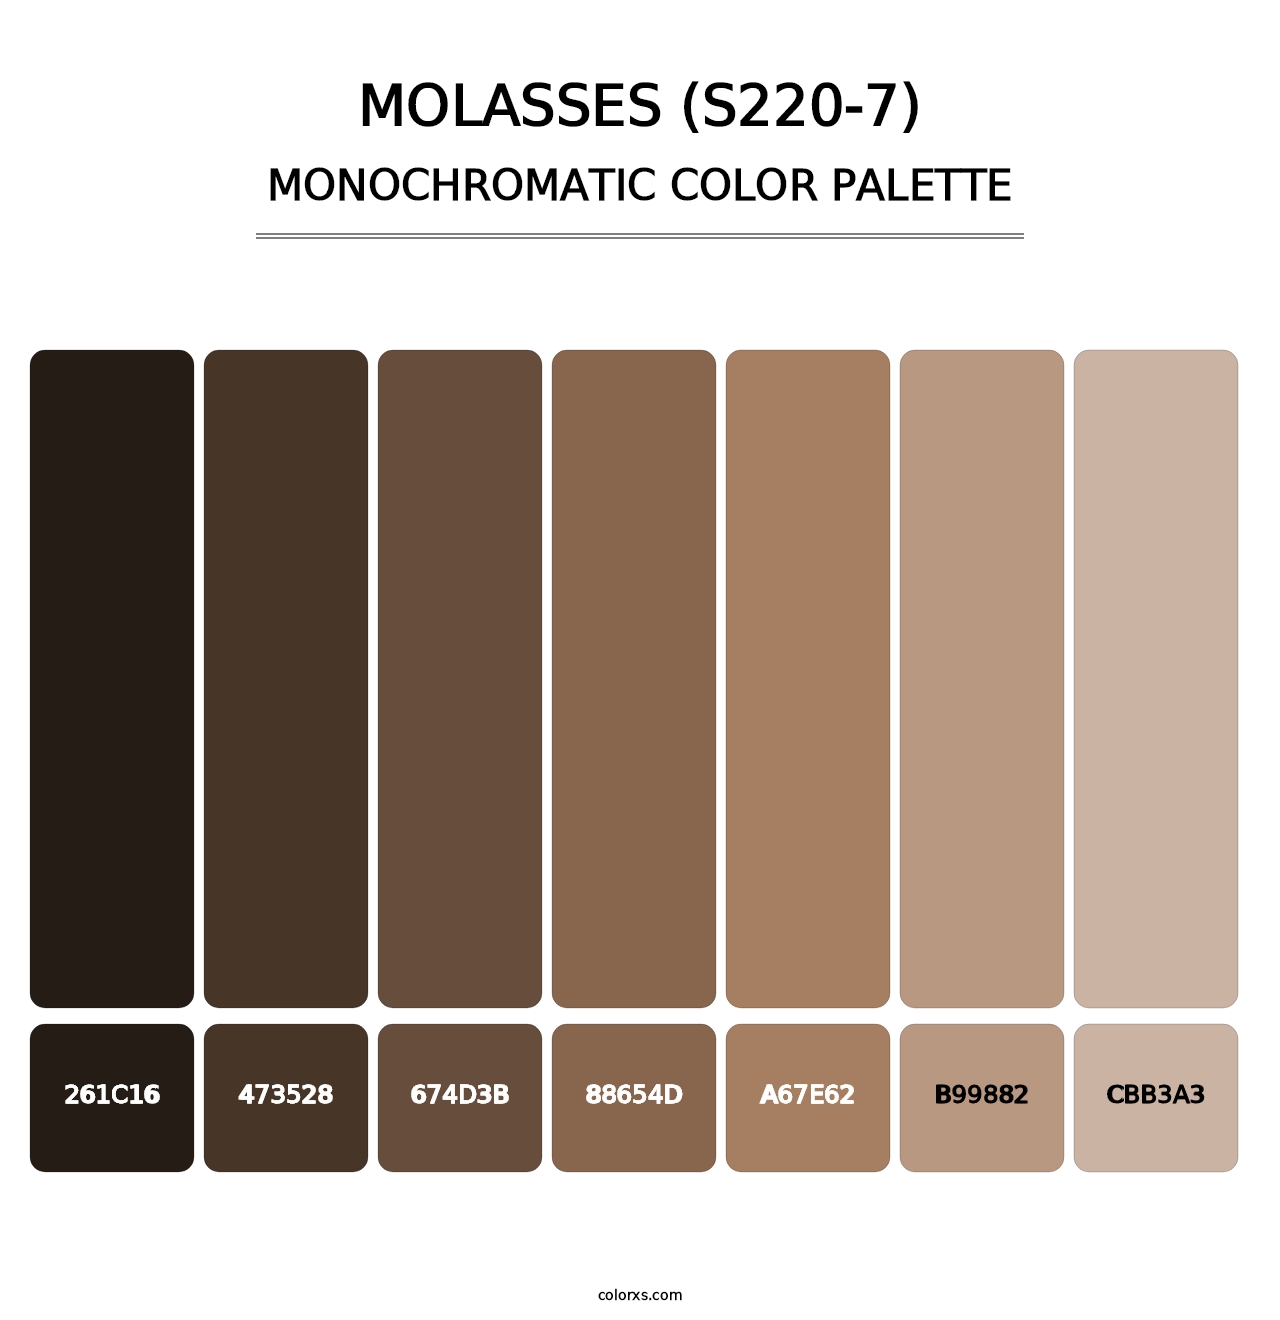 Molasses (S220-7) - Monochromatic Color Palette